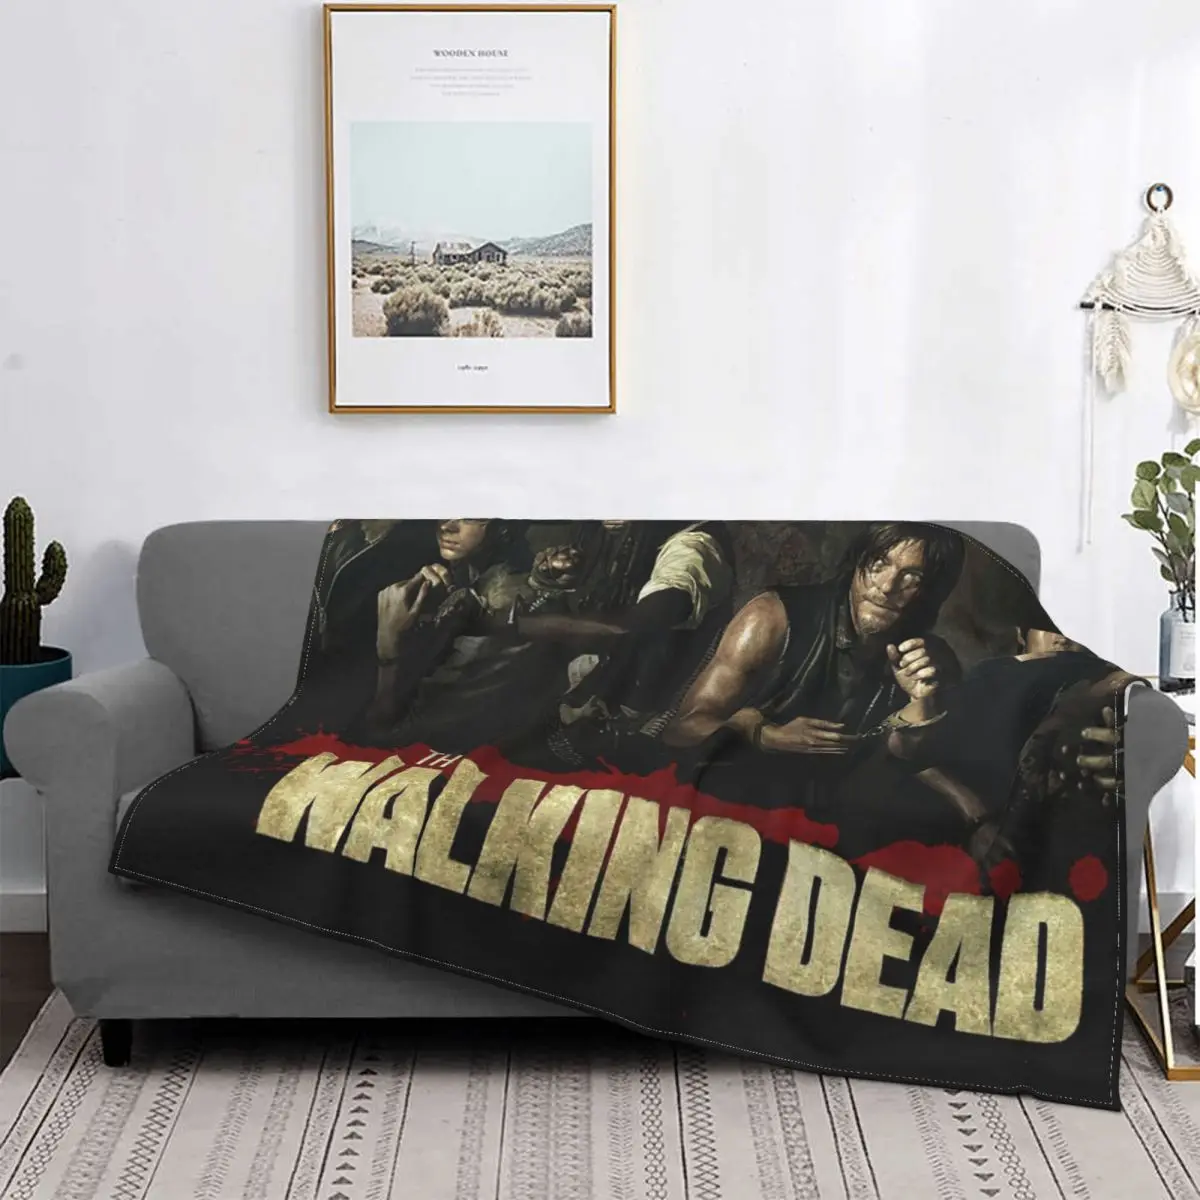 

Фланелевое Одеяло в стиле аниме Ходячие мертвецы, фанаты фильмов, кролики, страшное забавное одеяло с ужасами, домашнее покрывало, 200x150 см